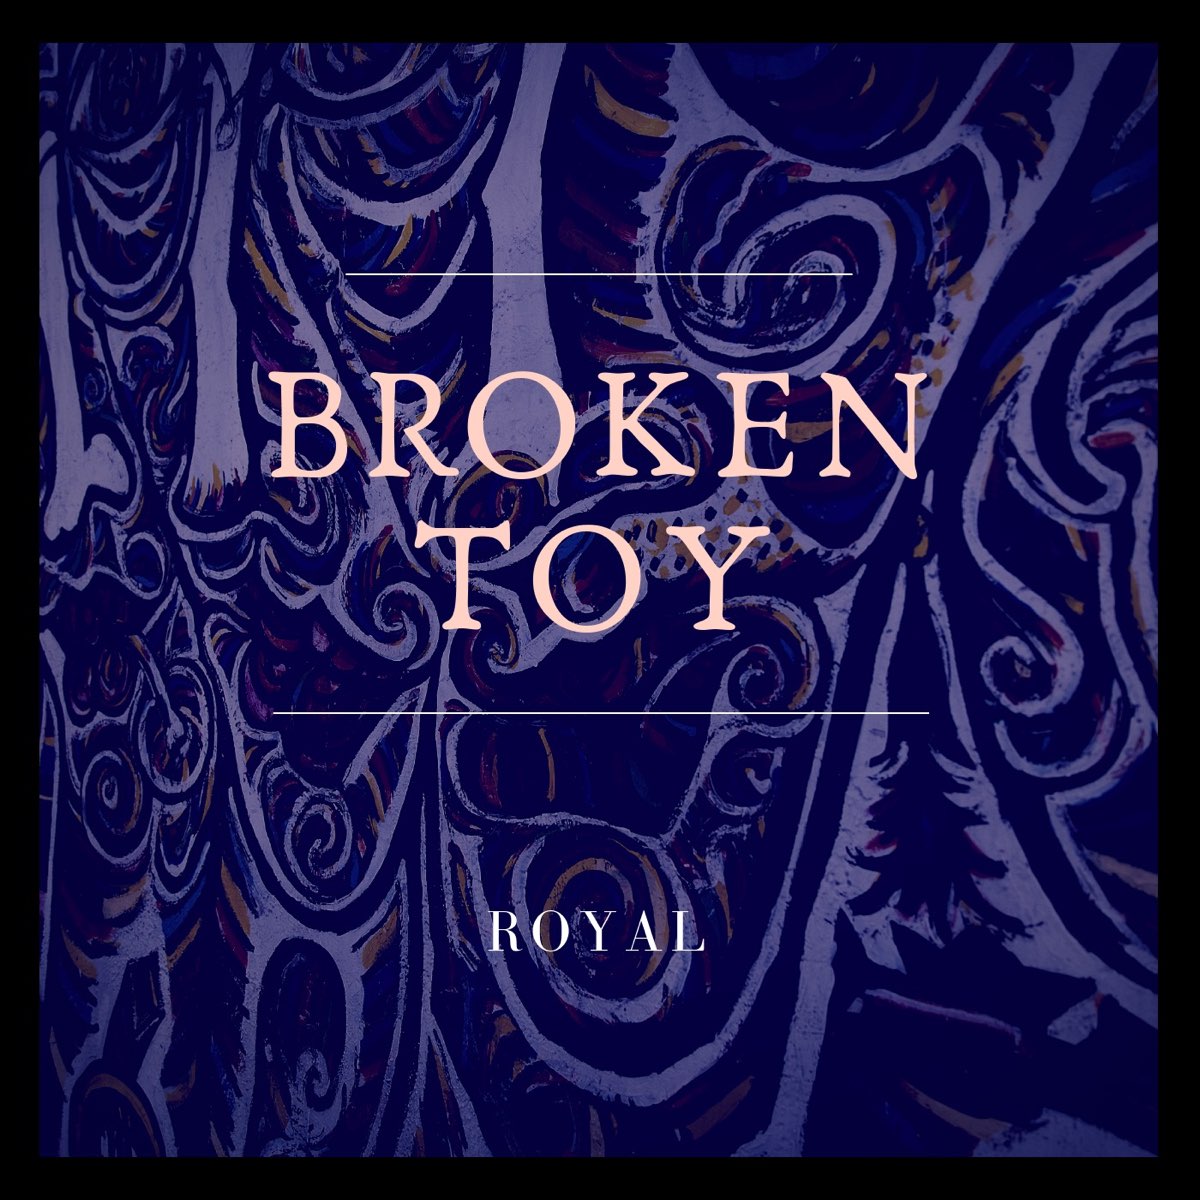 Broken toy. Broken Toy Sounds.